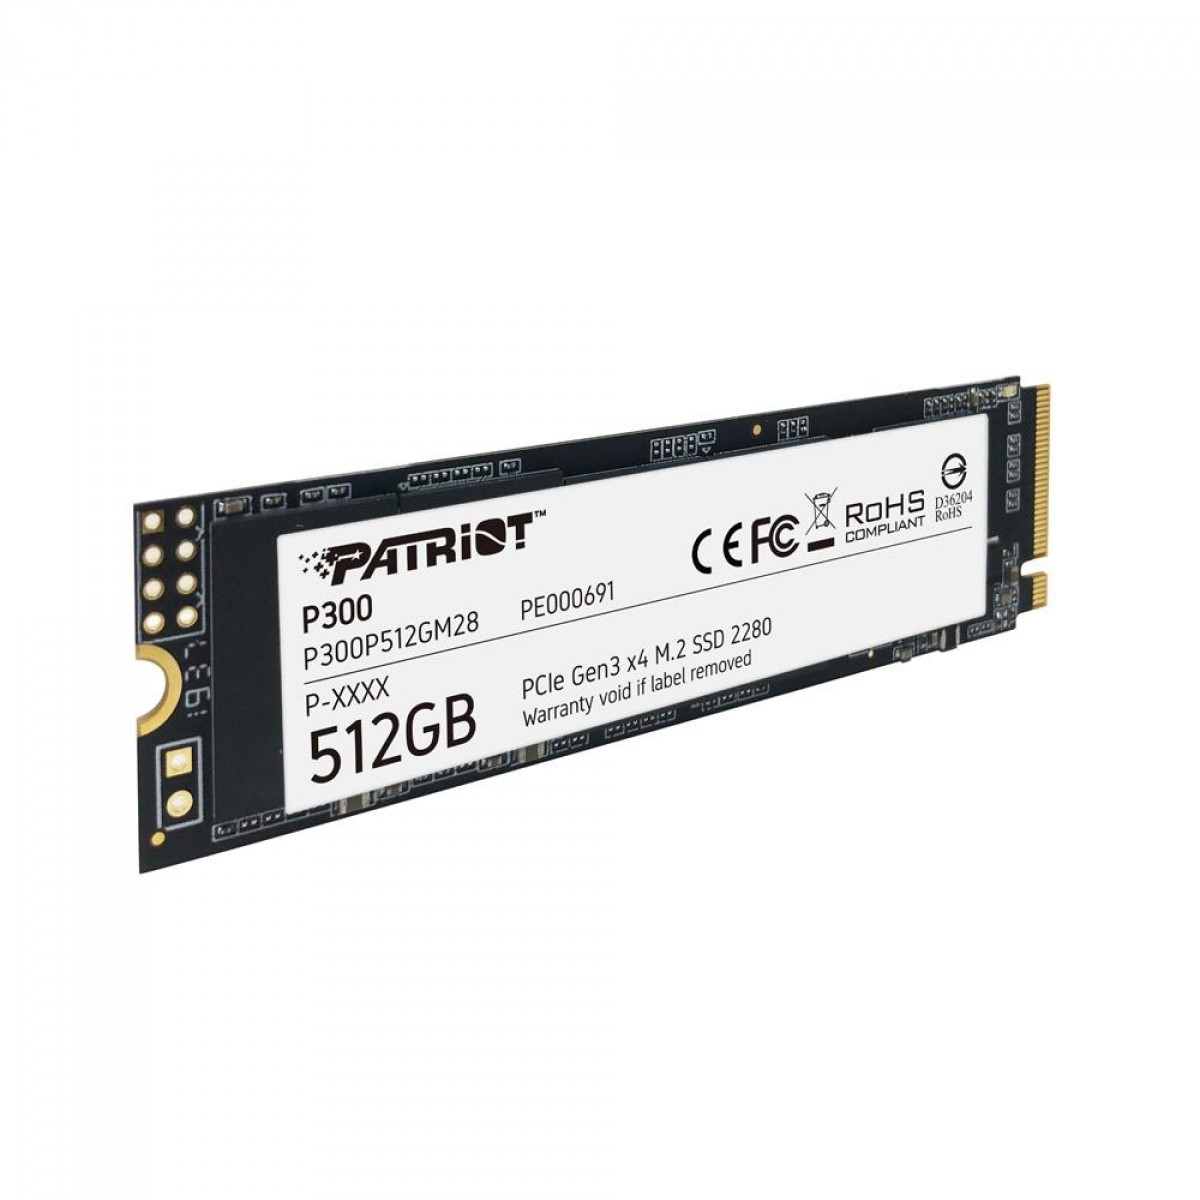 SSD Patriot P300, 512GB, M.2 2280 NVME, Leitura 1700MBs e Gravação 1100MBs, P300P512GM28